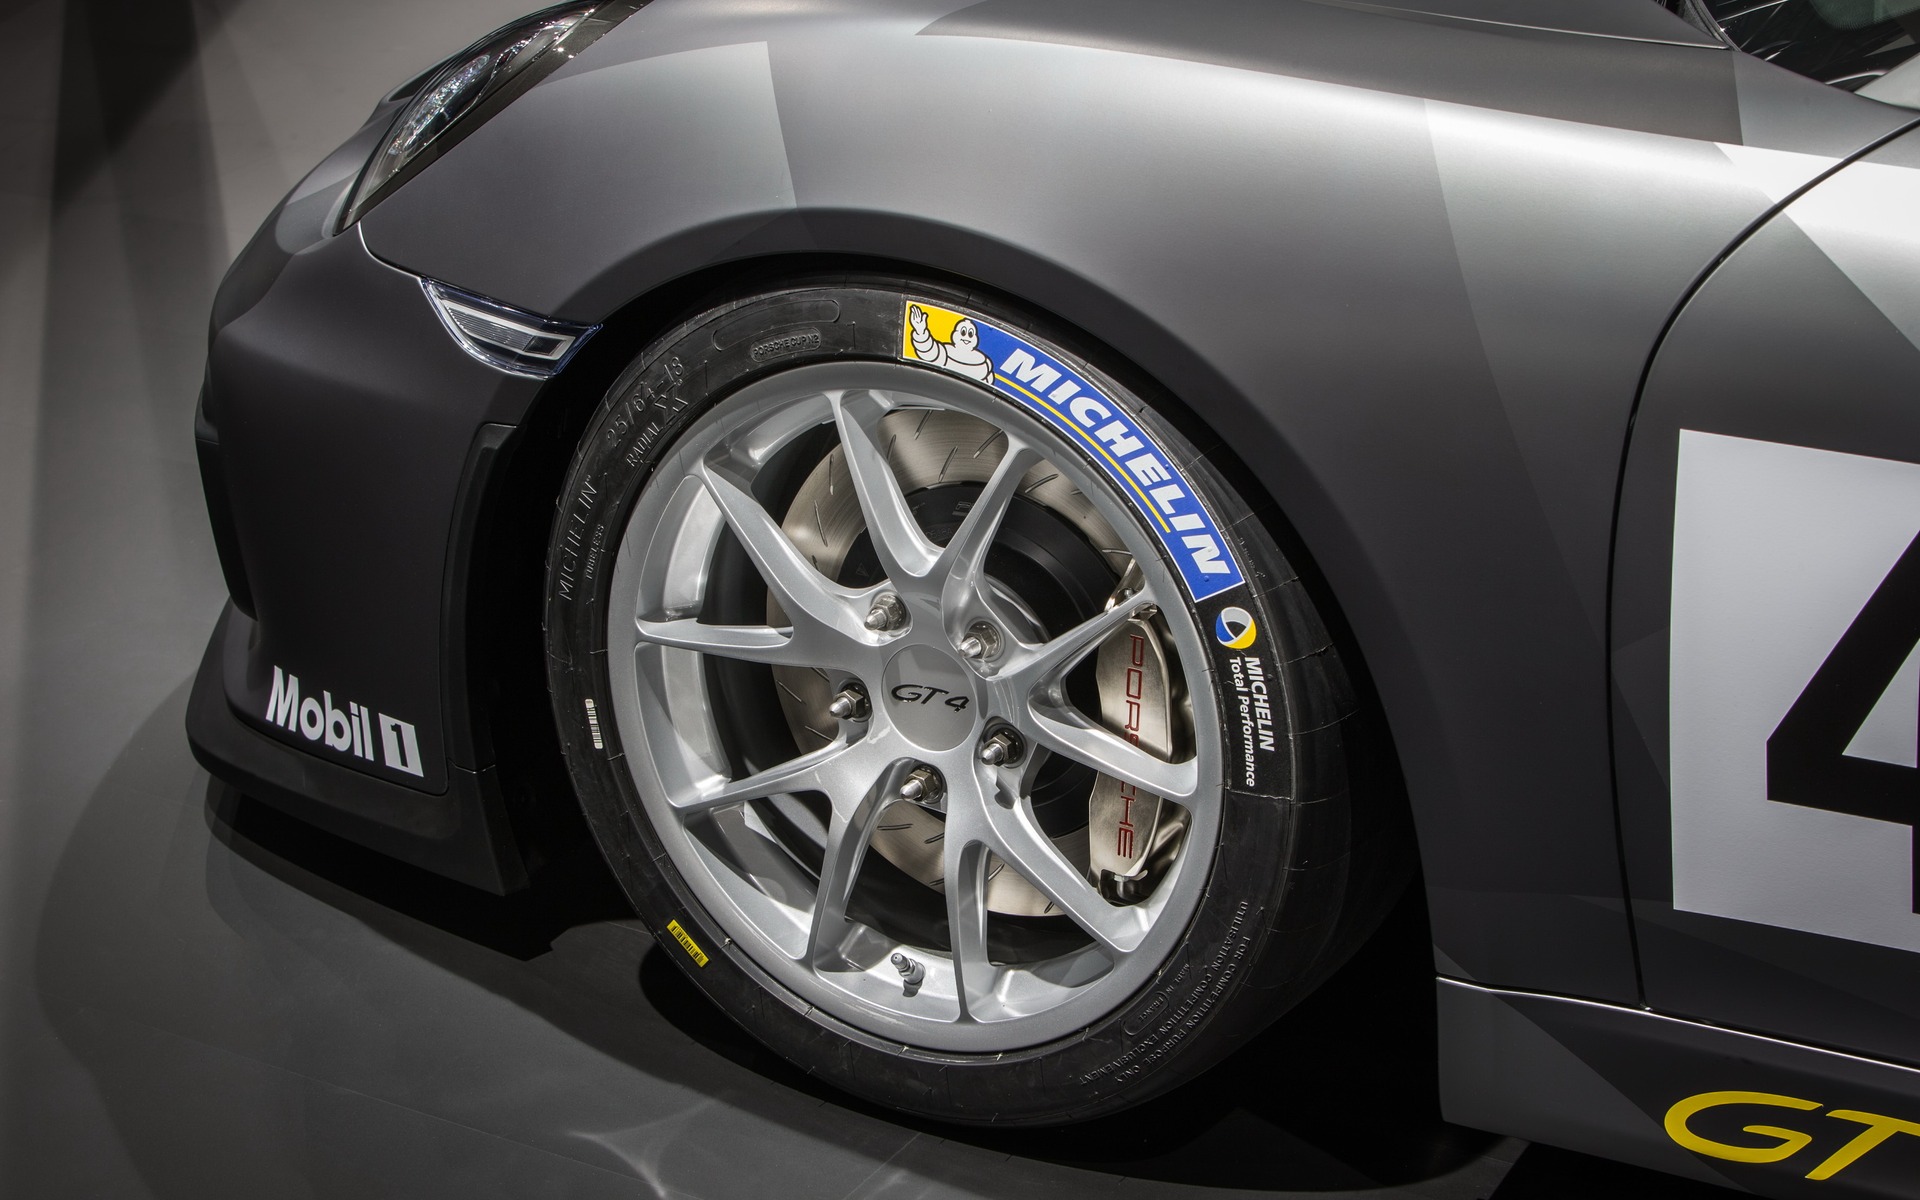 Porsche Cayman GT4 Clubsport - Pneus « slicks » Michelin de course. 